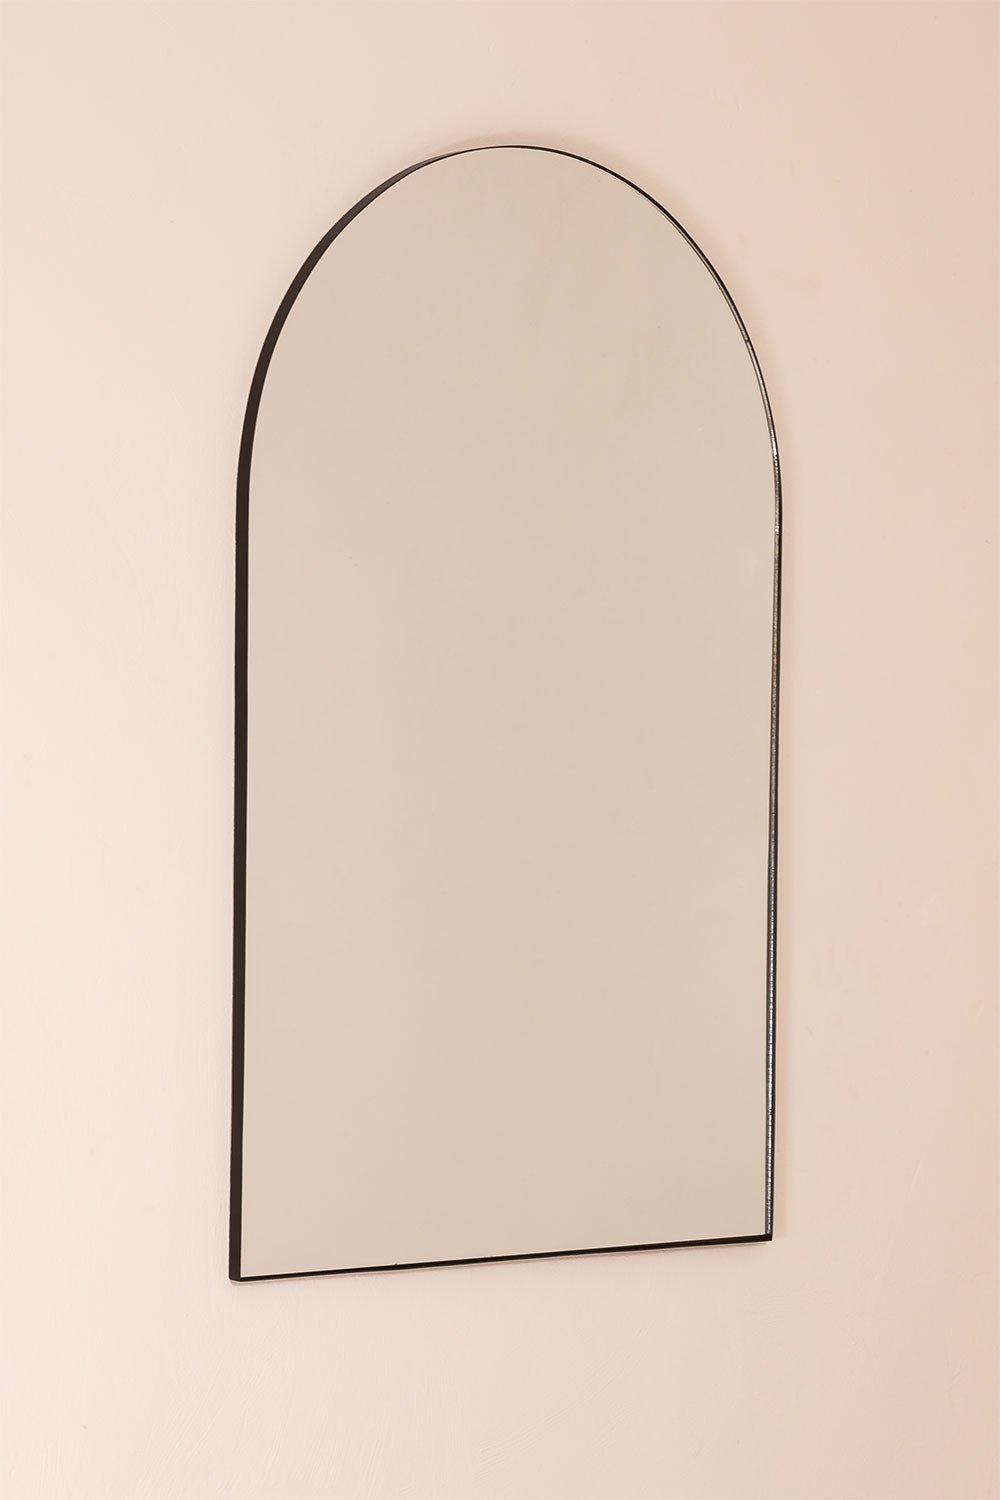 Metalen Wandspiegel (120x77 cm) Ingrid, galerij beeld 2